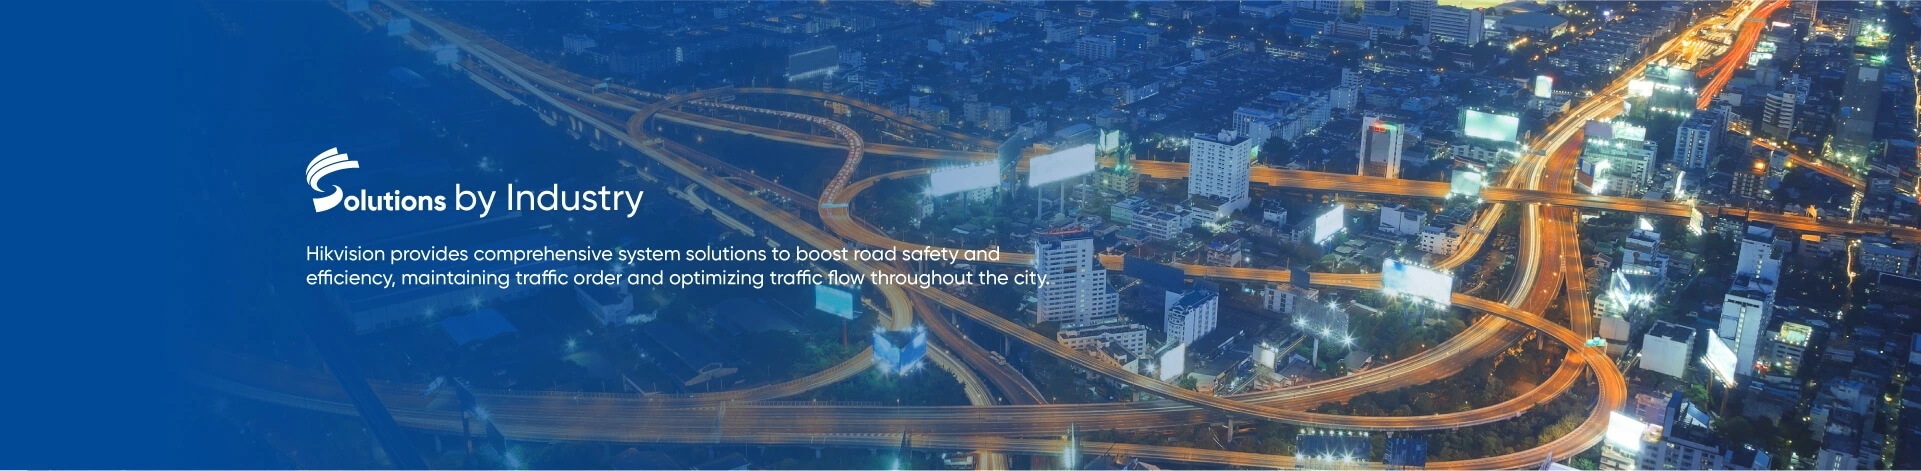 Hikvision proporciona soluciones de sistema completas para aumentar la seguridad y la eficiencia en la carretera, lo que mantiene el orden del tráfico y optimiza el flujo de vehículos en toda la ciudad.